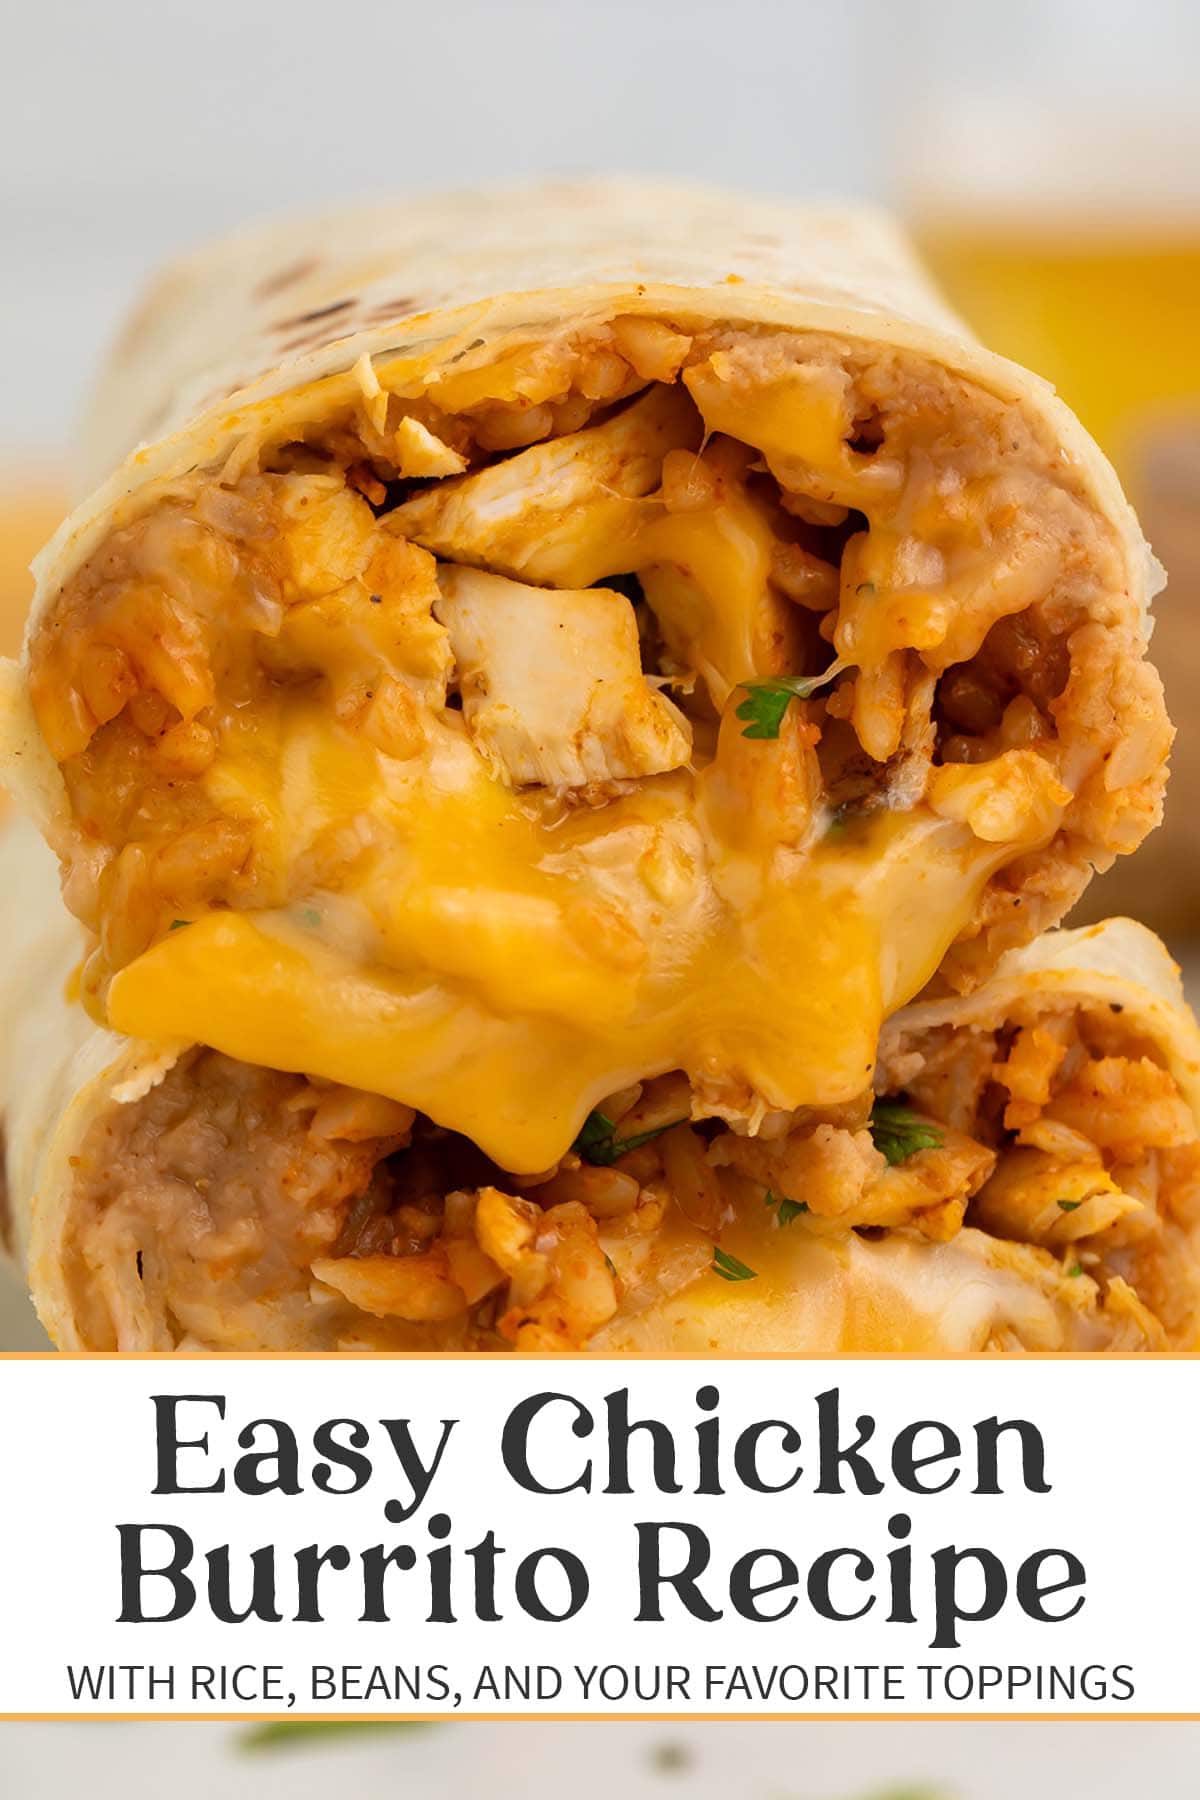 Pin graphic for easy chicken burrito recipe.